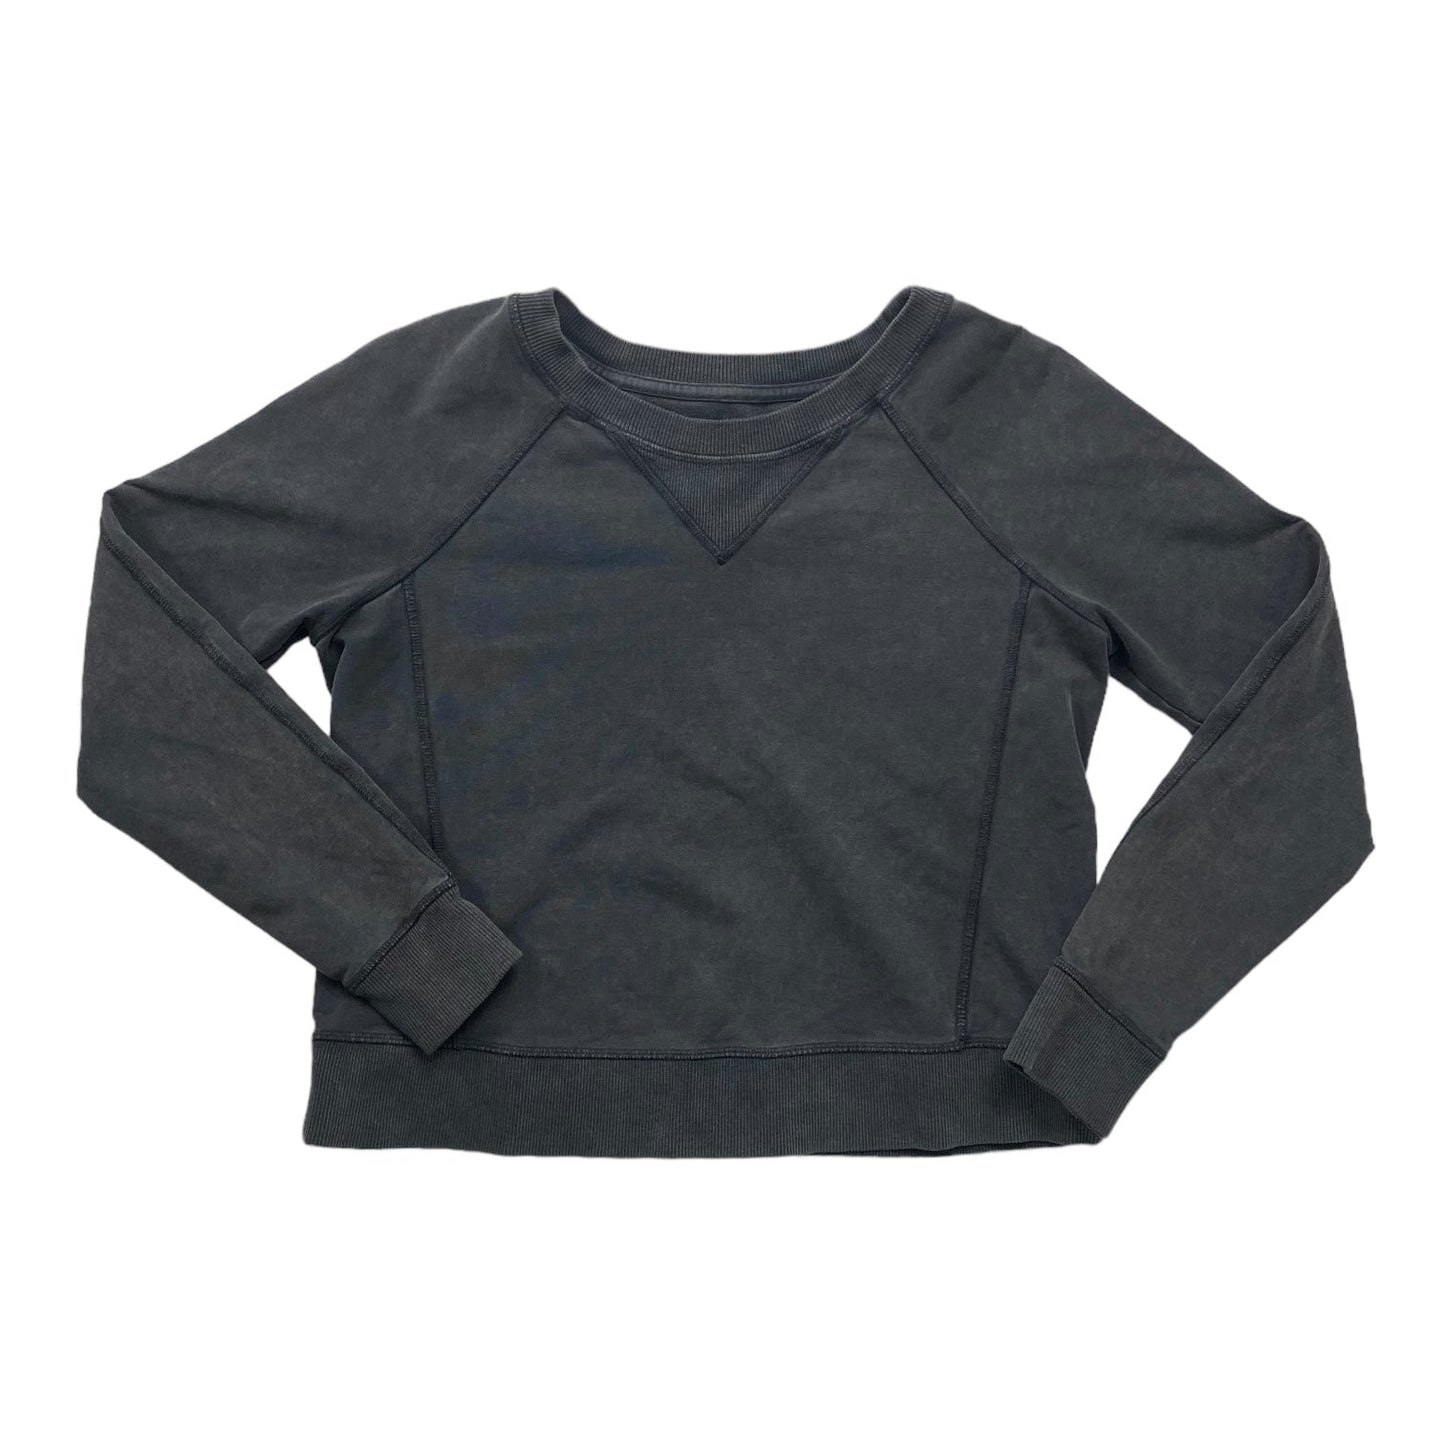 Grey Sweatshirt Crewneck Lululemon, Size S